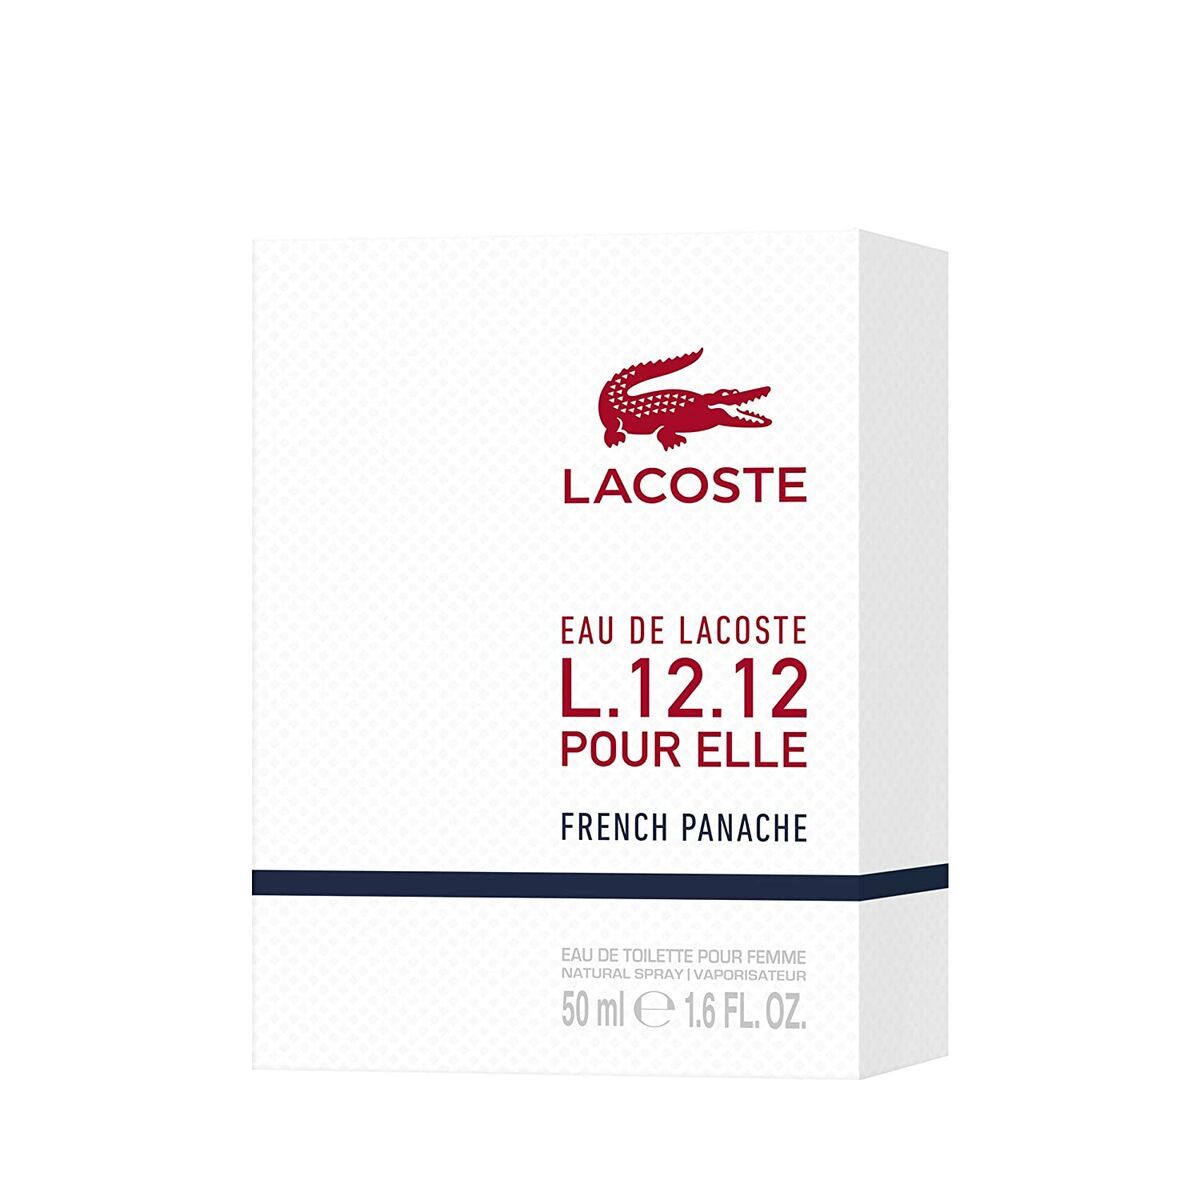 Damesparfum Lacoste EDT Eau de Lacoste L.12.12 French Panache 50 ml